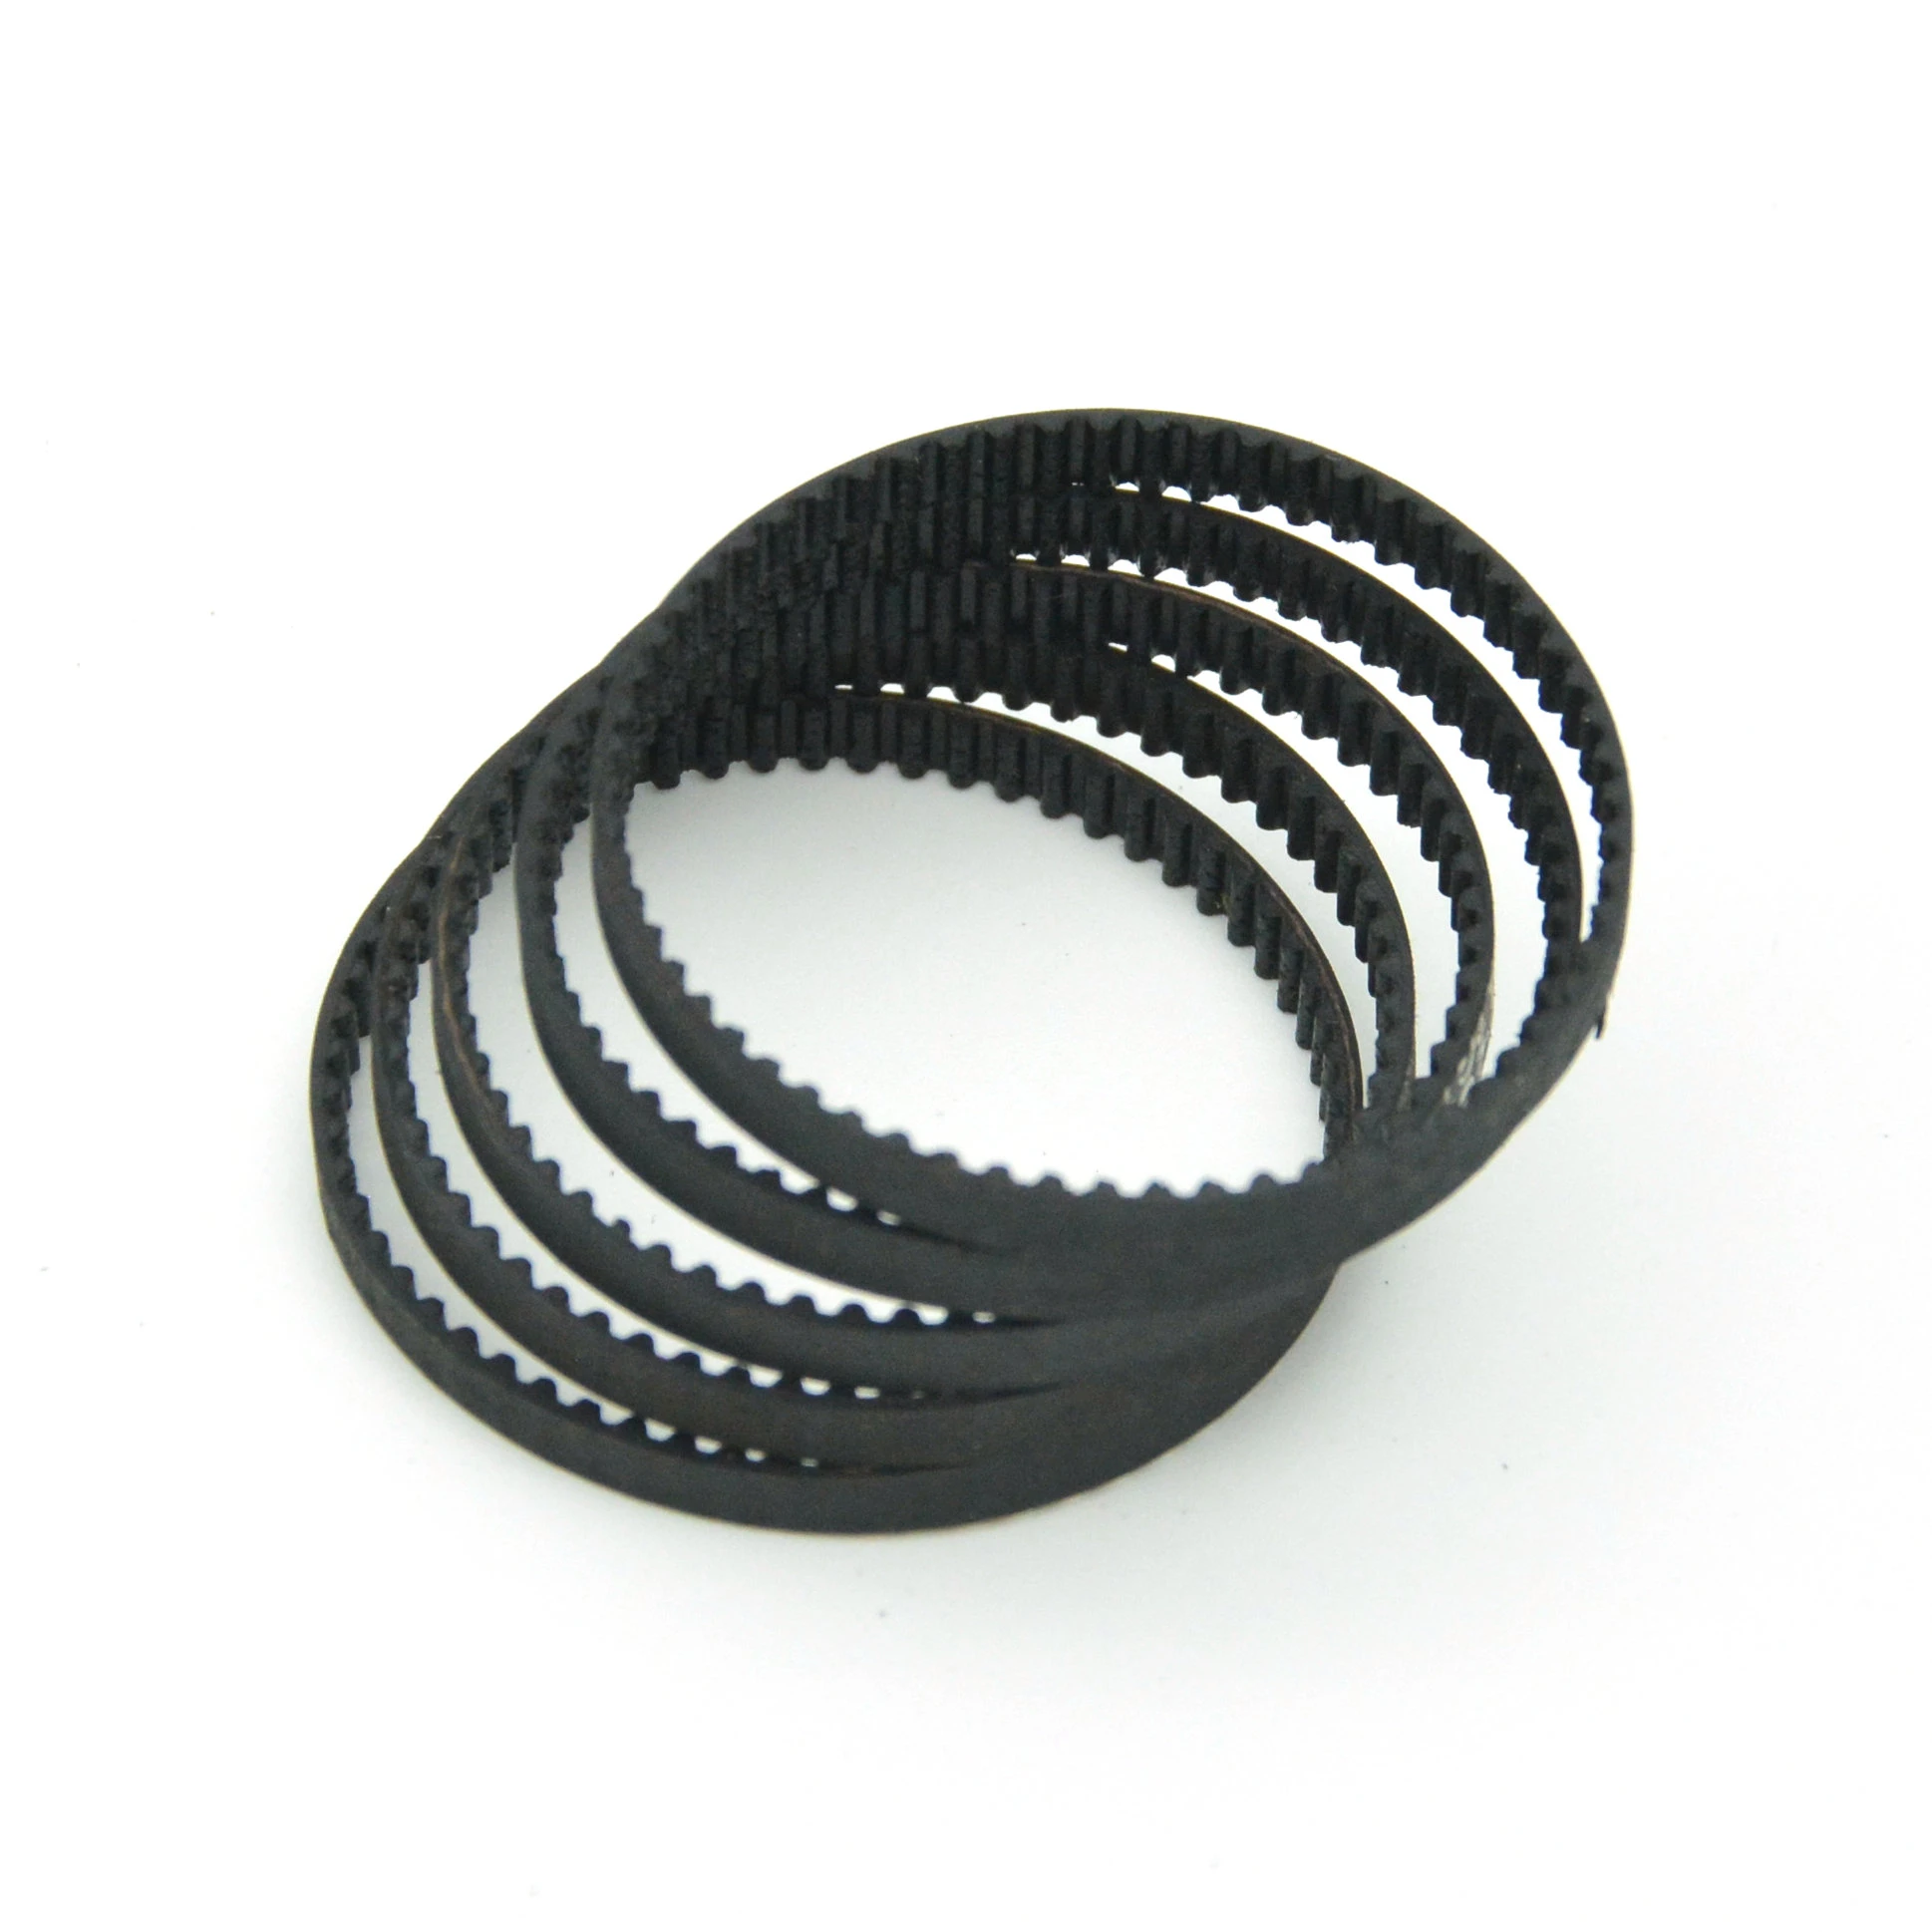 MXL Gummi Zahnriemen Geschlossene Schleife Antriebsriemen 6mm Breite für CNC/3D